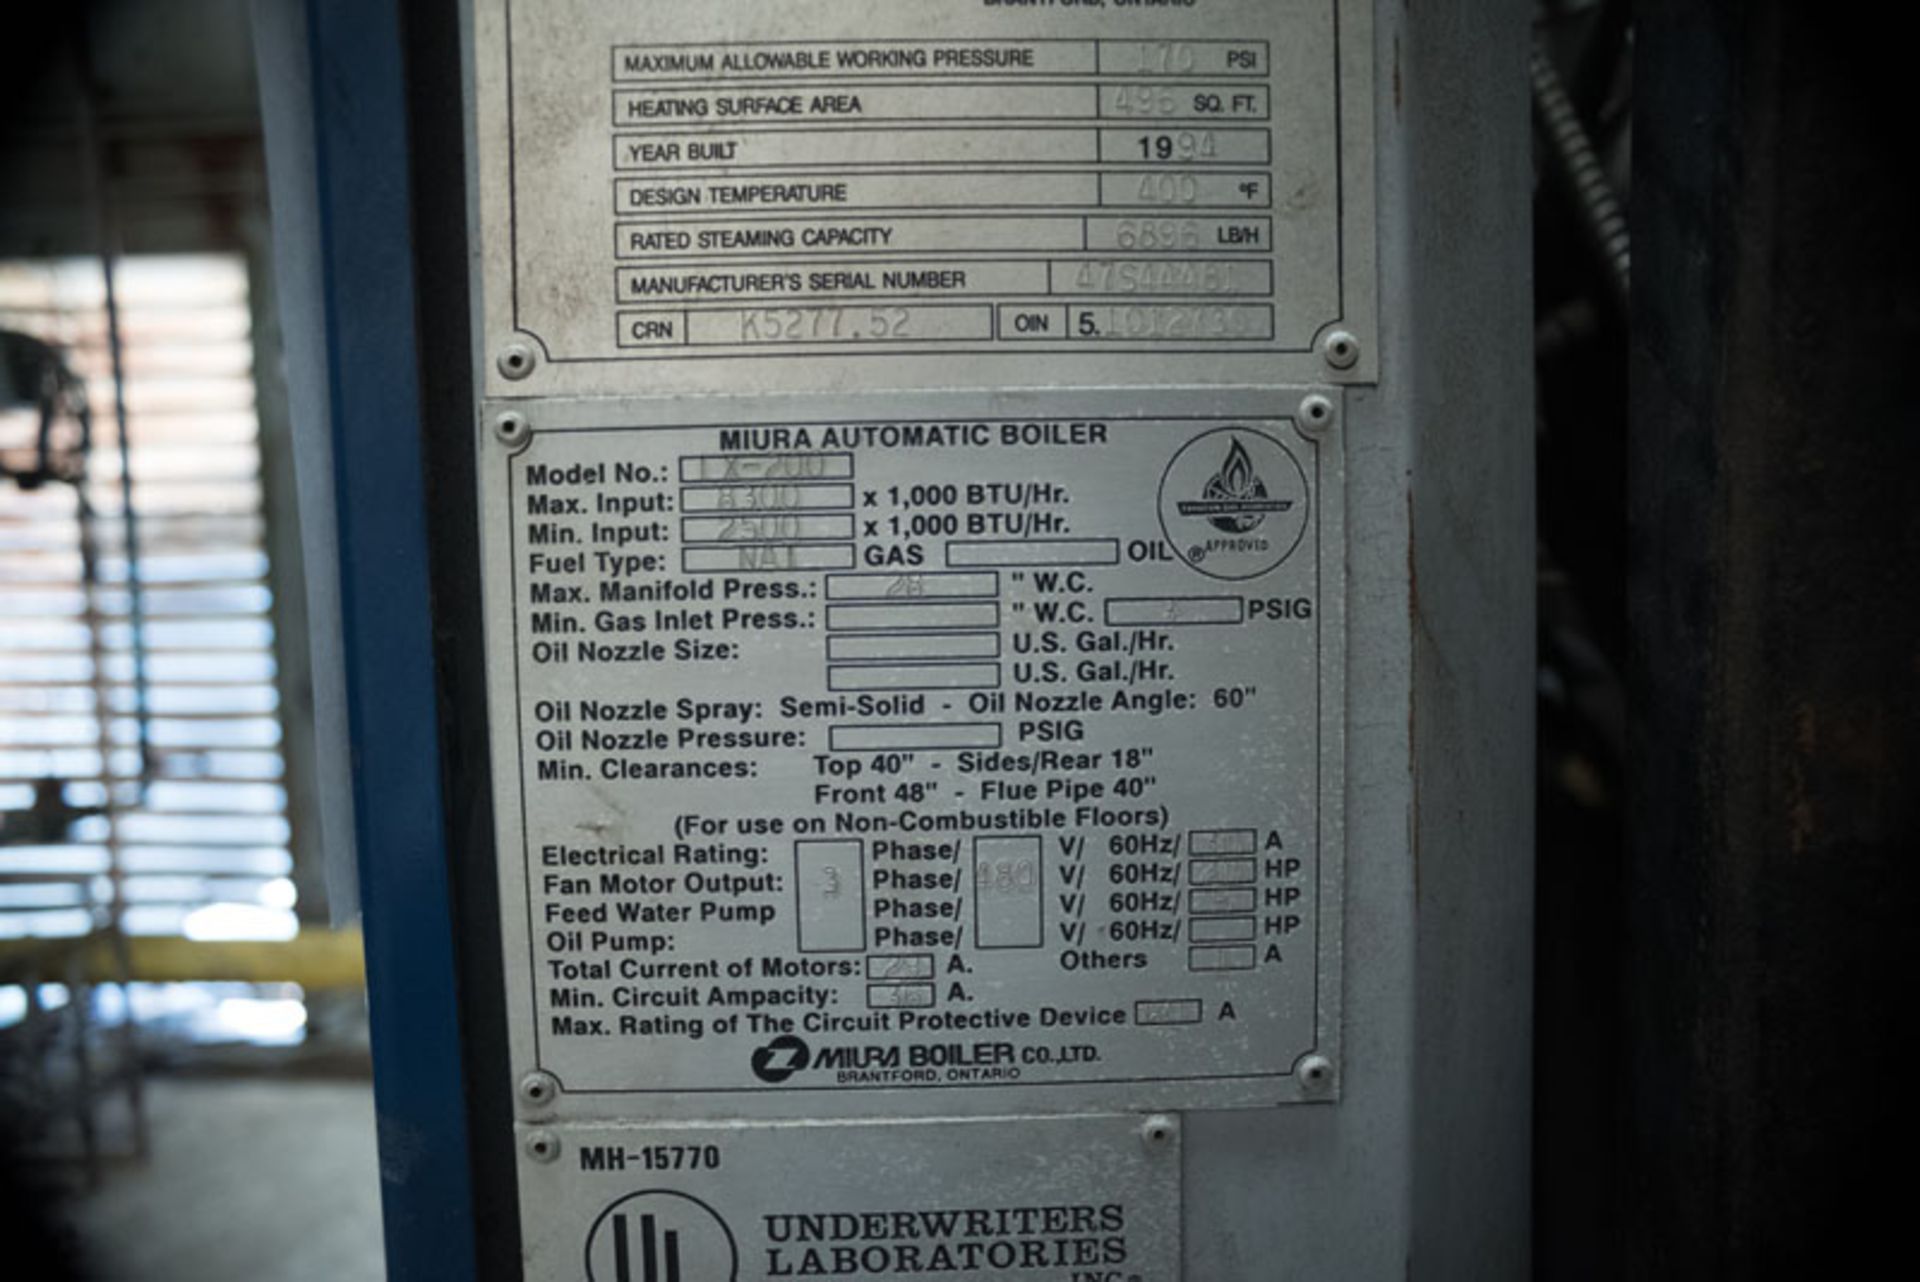 Muira Boilers Model LX-200 SER# 47S44481 - Image 8 of 8